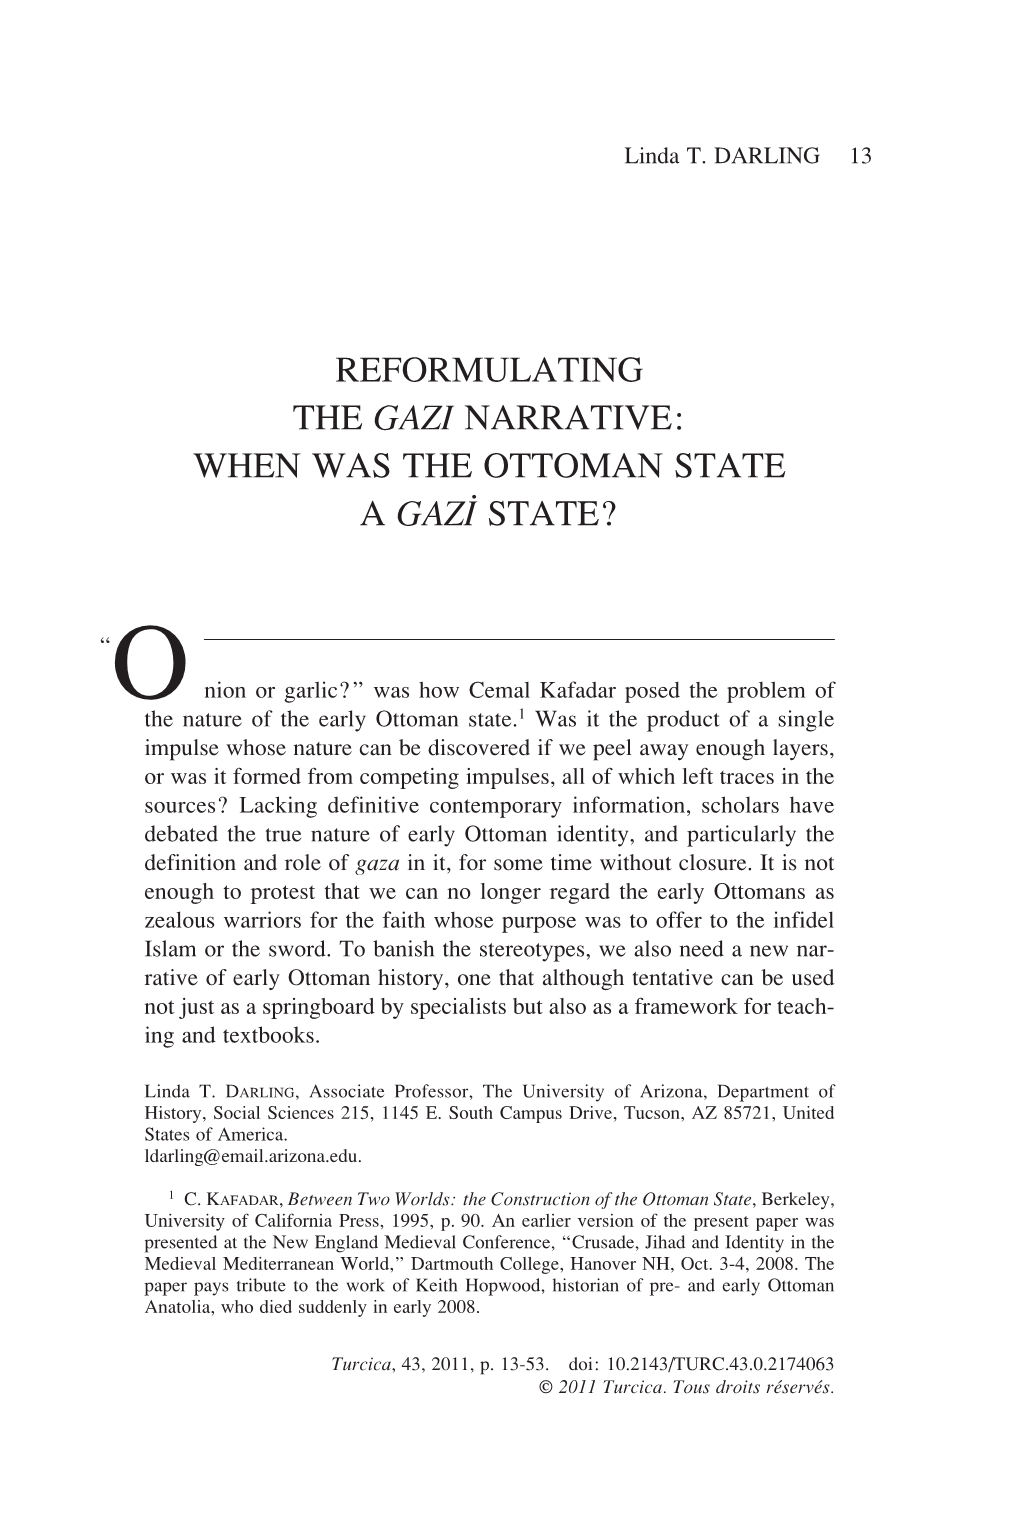 When Was the Ottoman State a Gazi State?